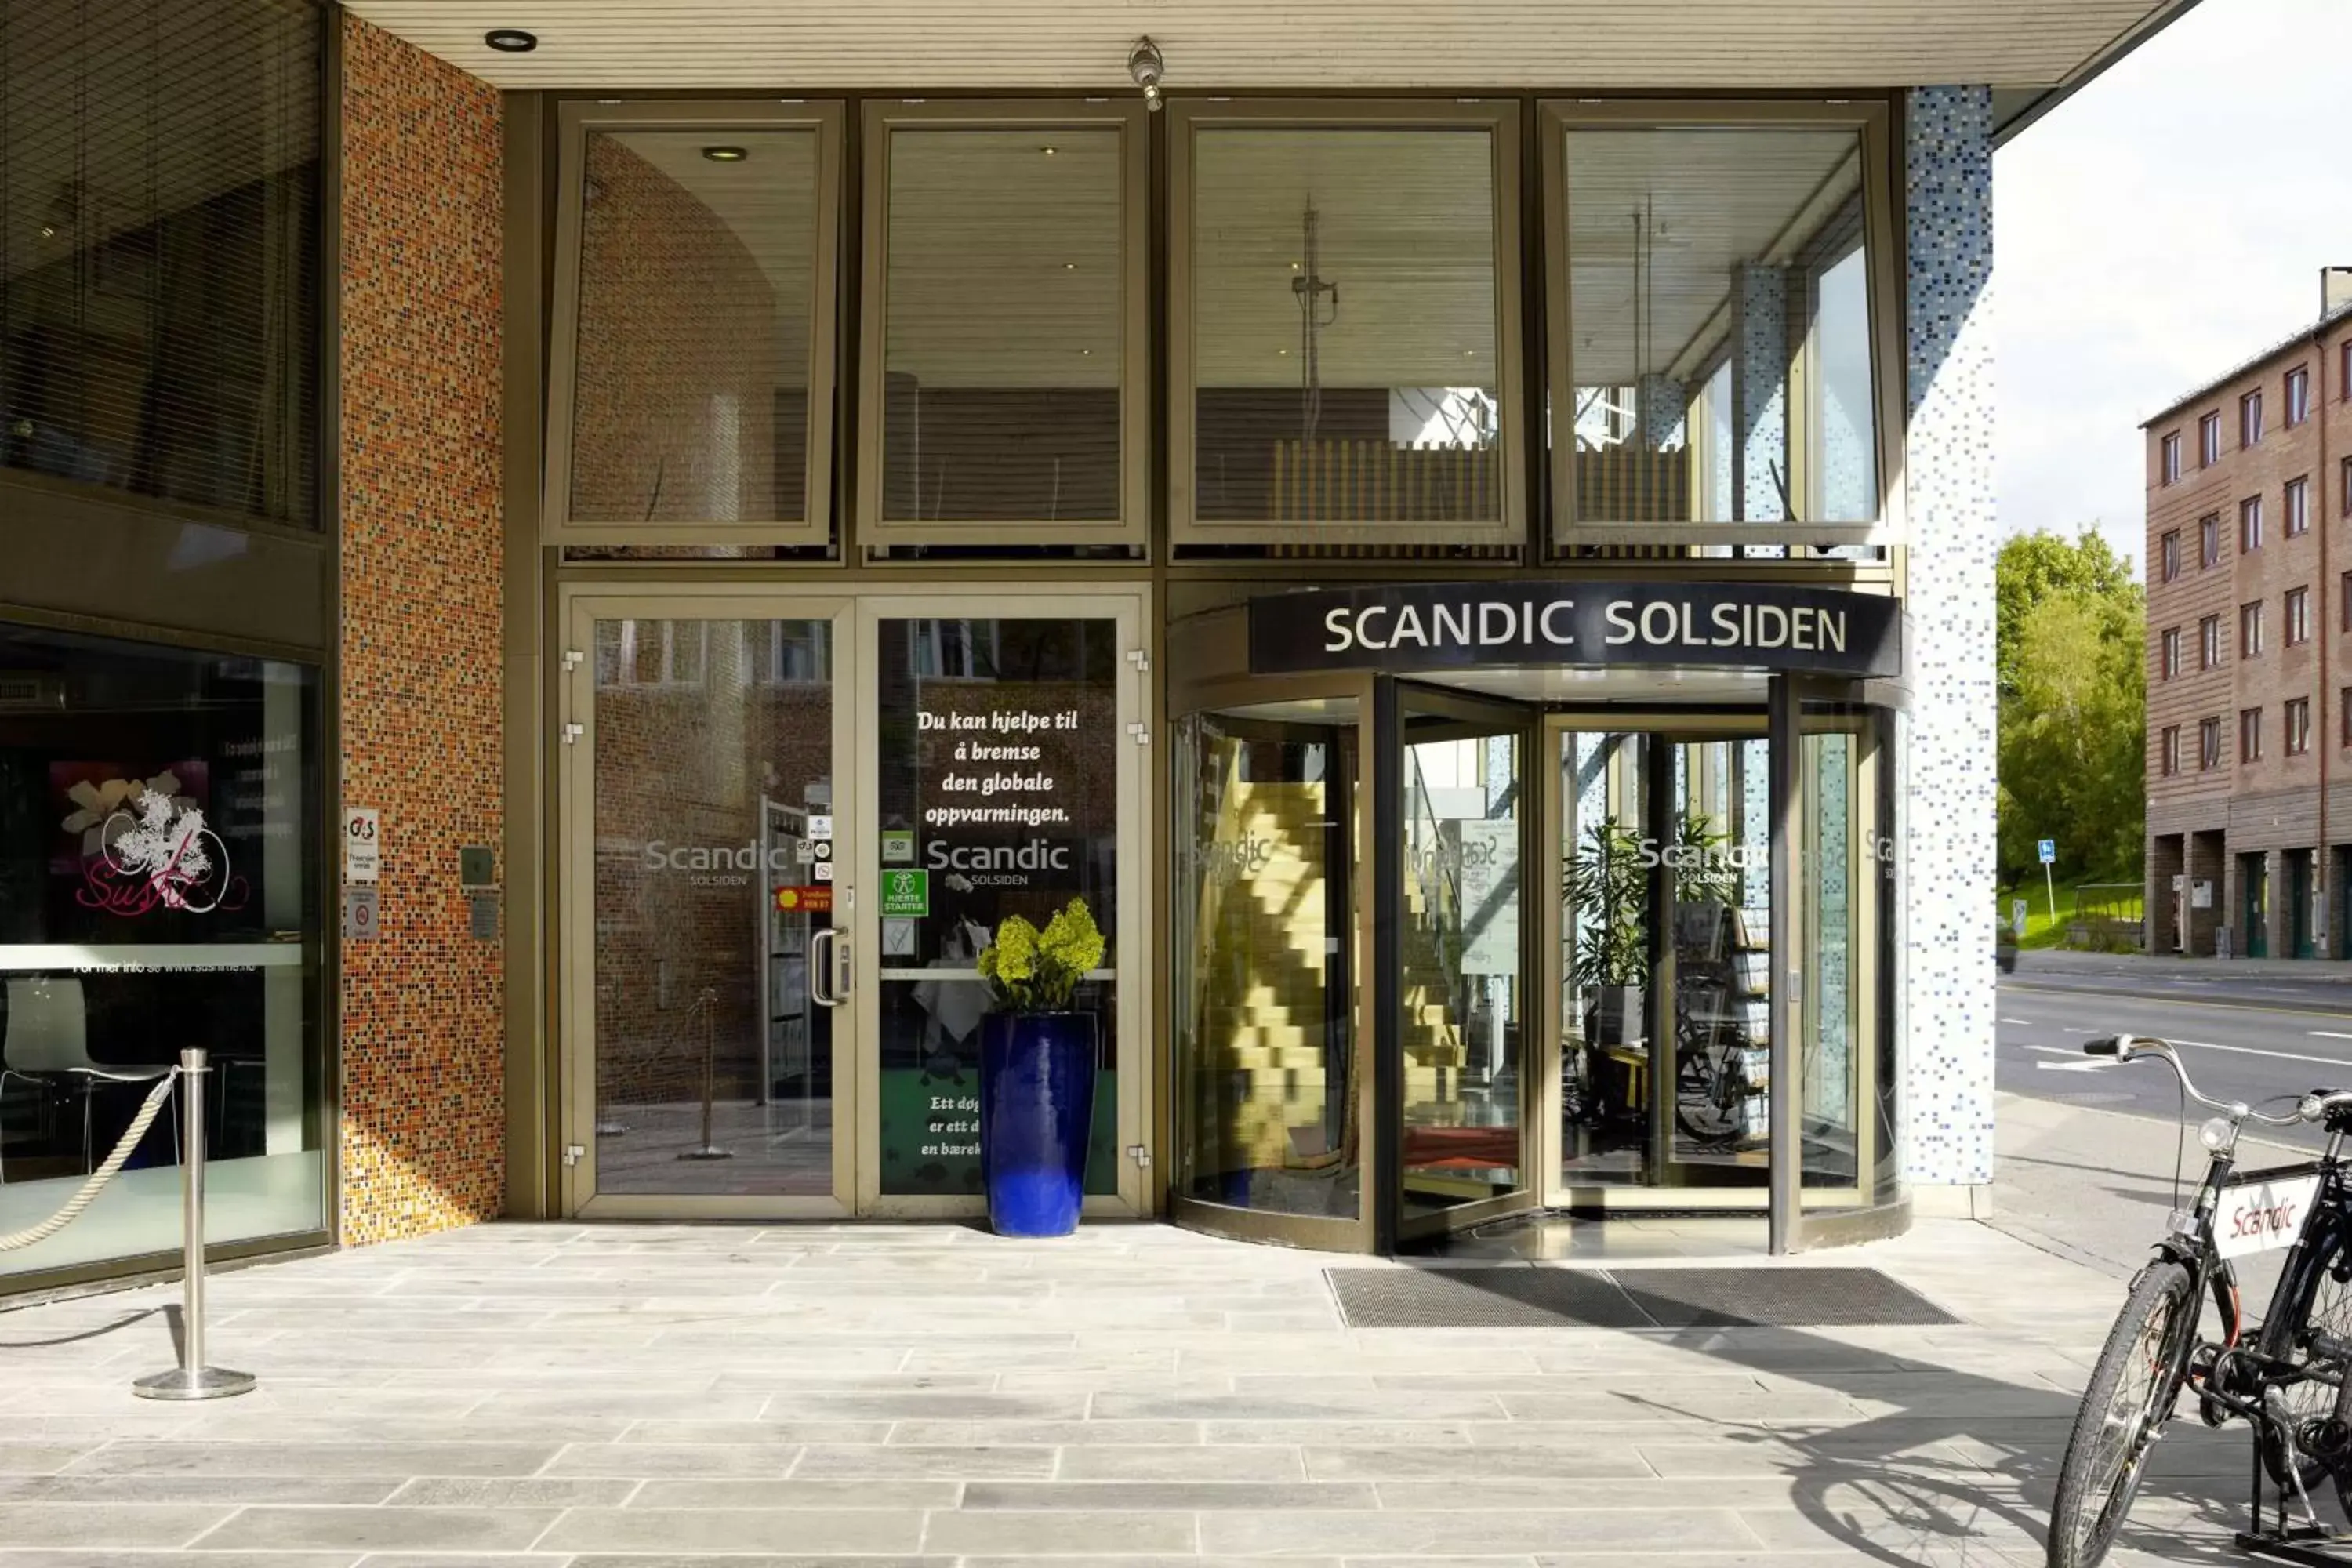 Property building in Scandic Solsiden